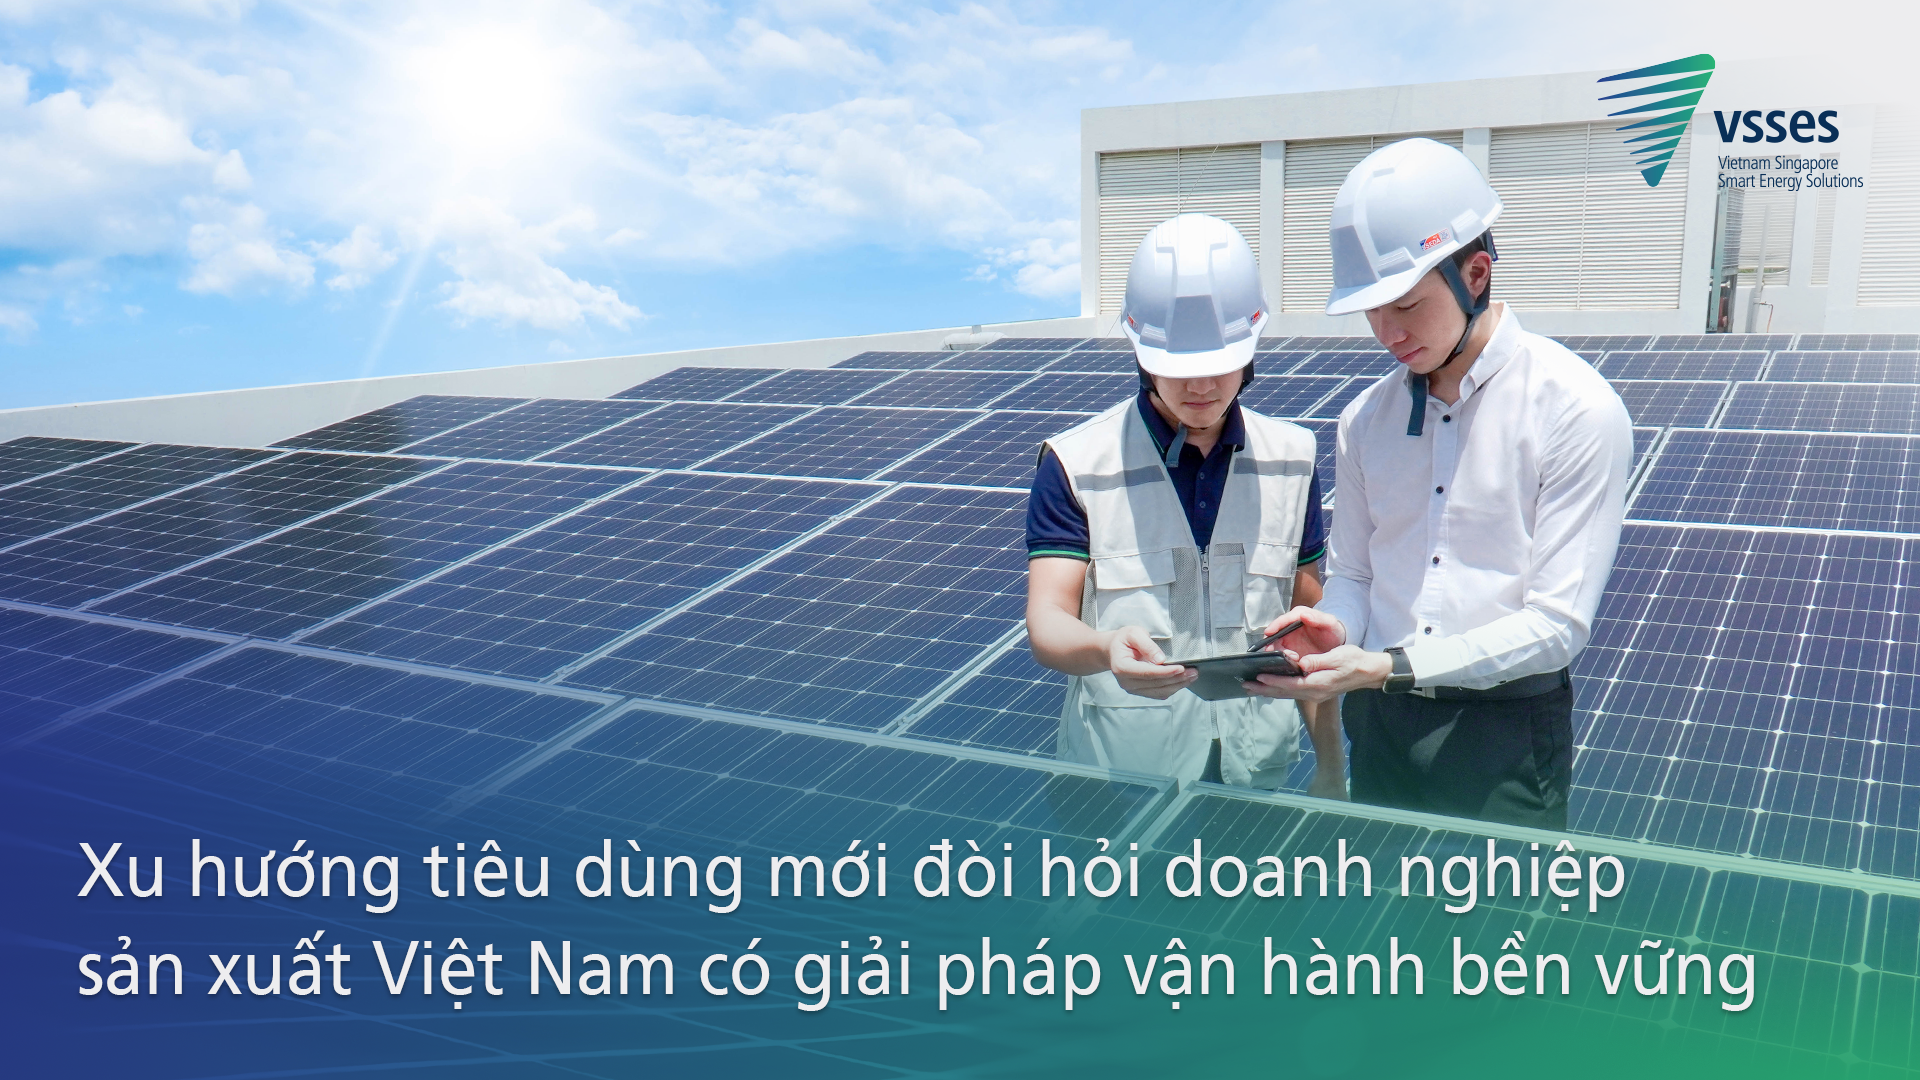 Xu hướng tiêu dùng mới đòi hỏi doanh nghiệp sản xuất Việt Nam có giải pháp vận hành bền vững